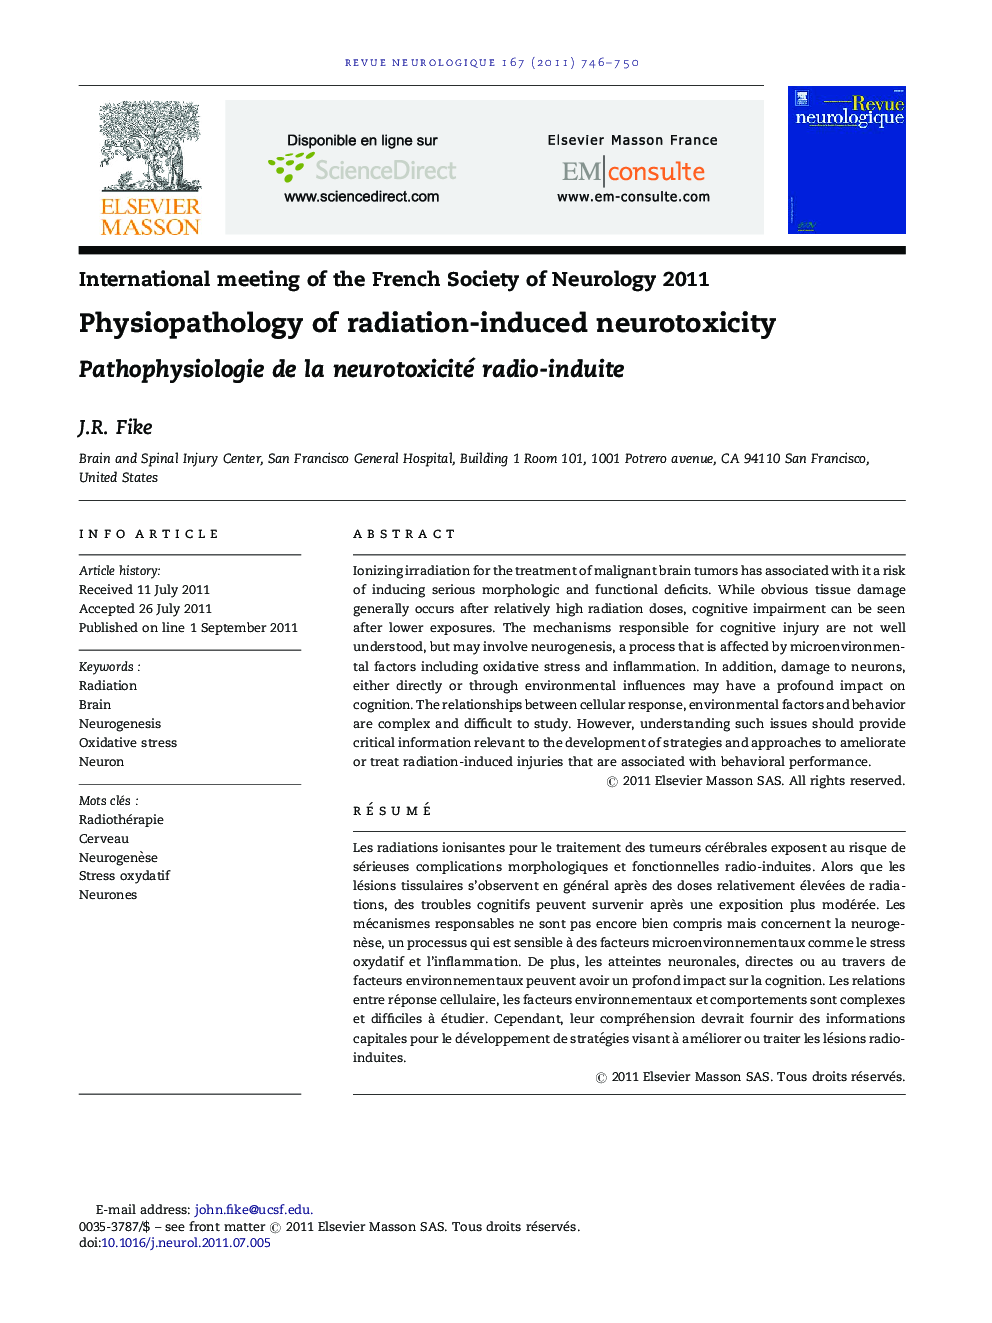 Physiopathology of radiation-induced neurotoxicity